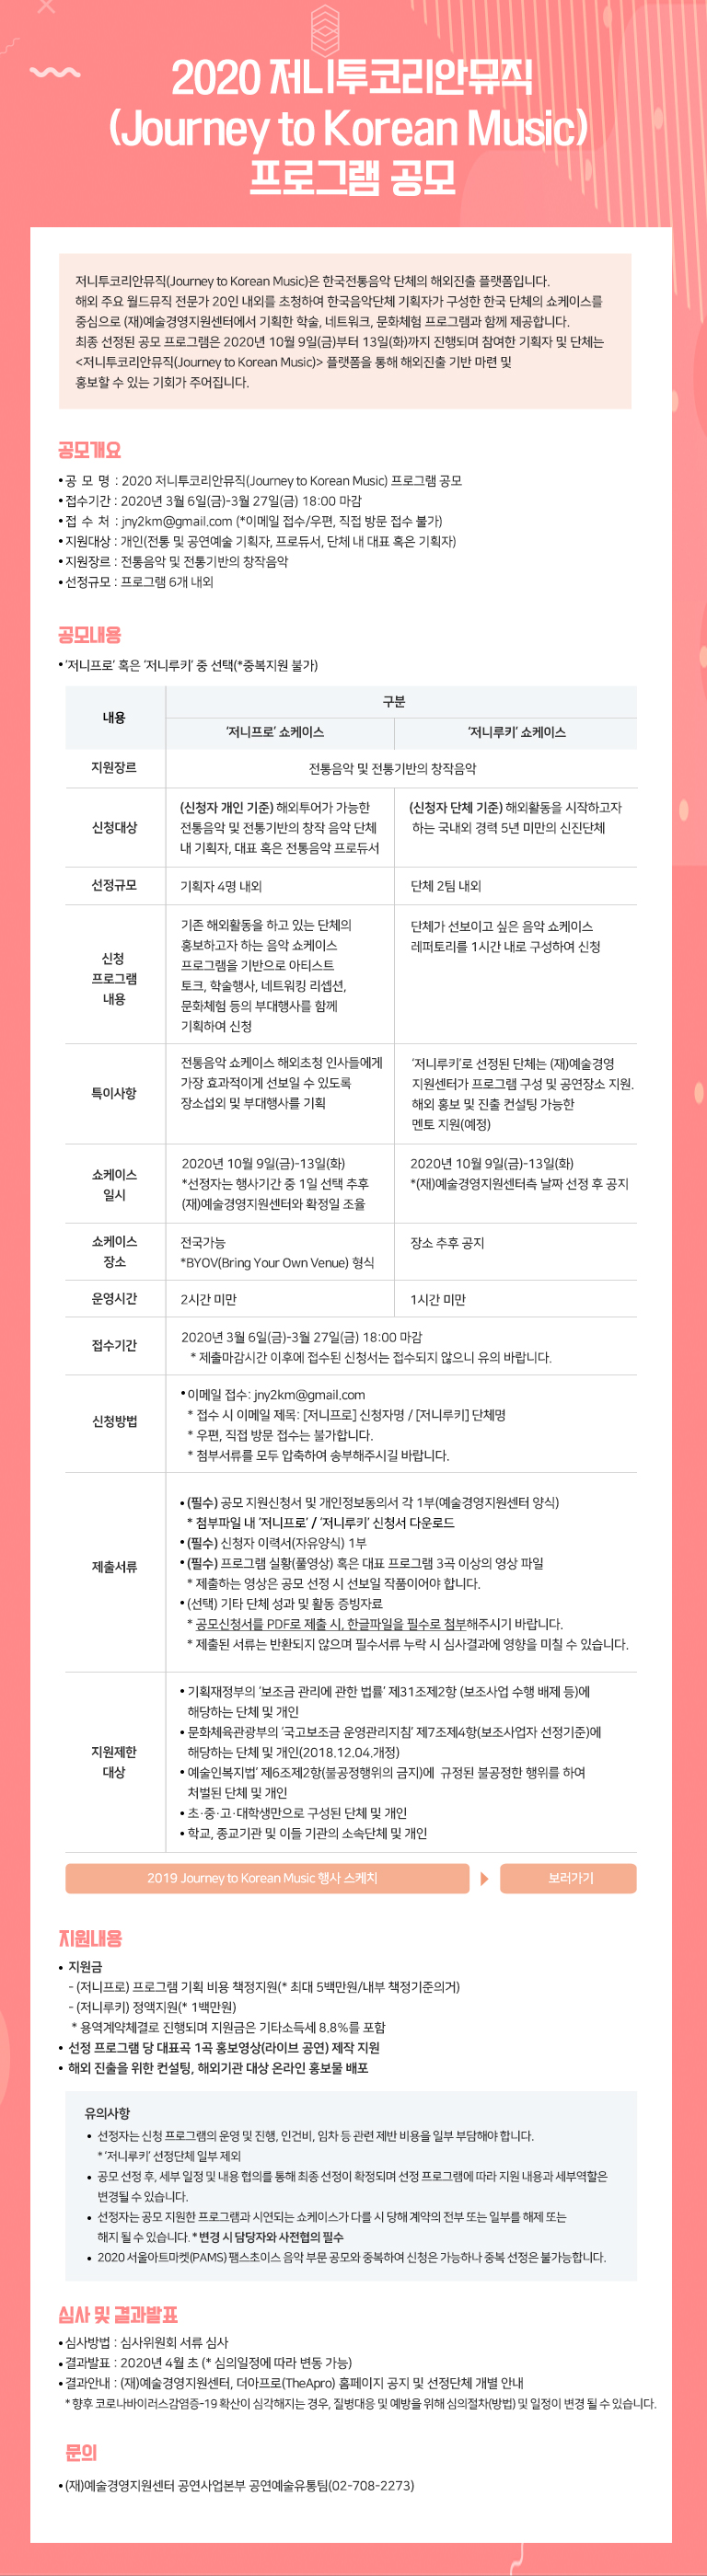 2020 저니투코리안뮤직(Journey to Korean Music) 프로그램 공모